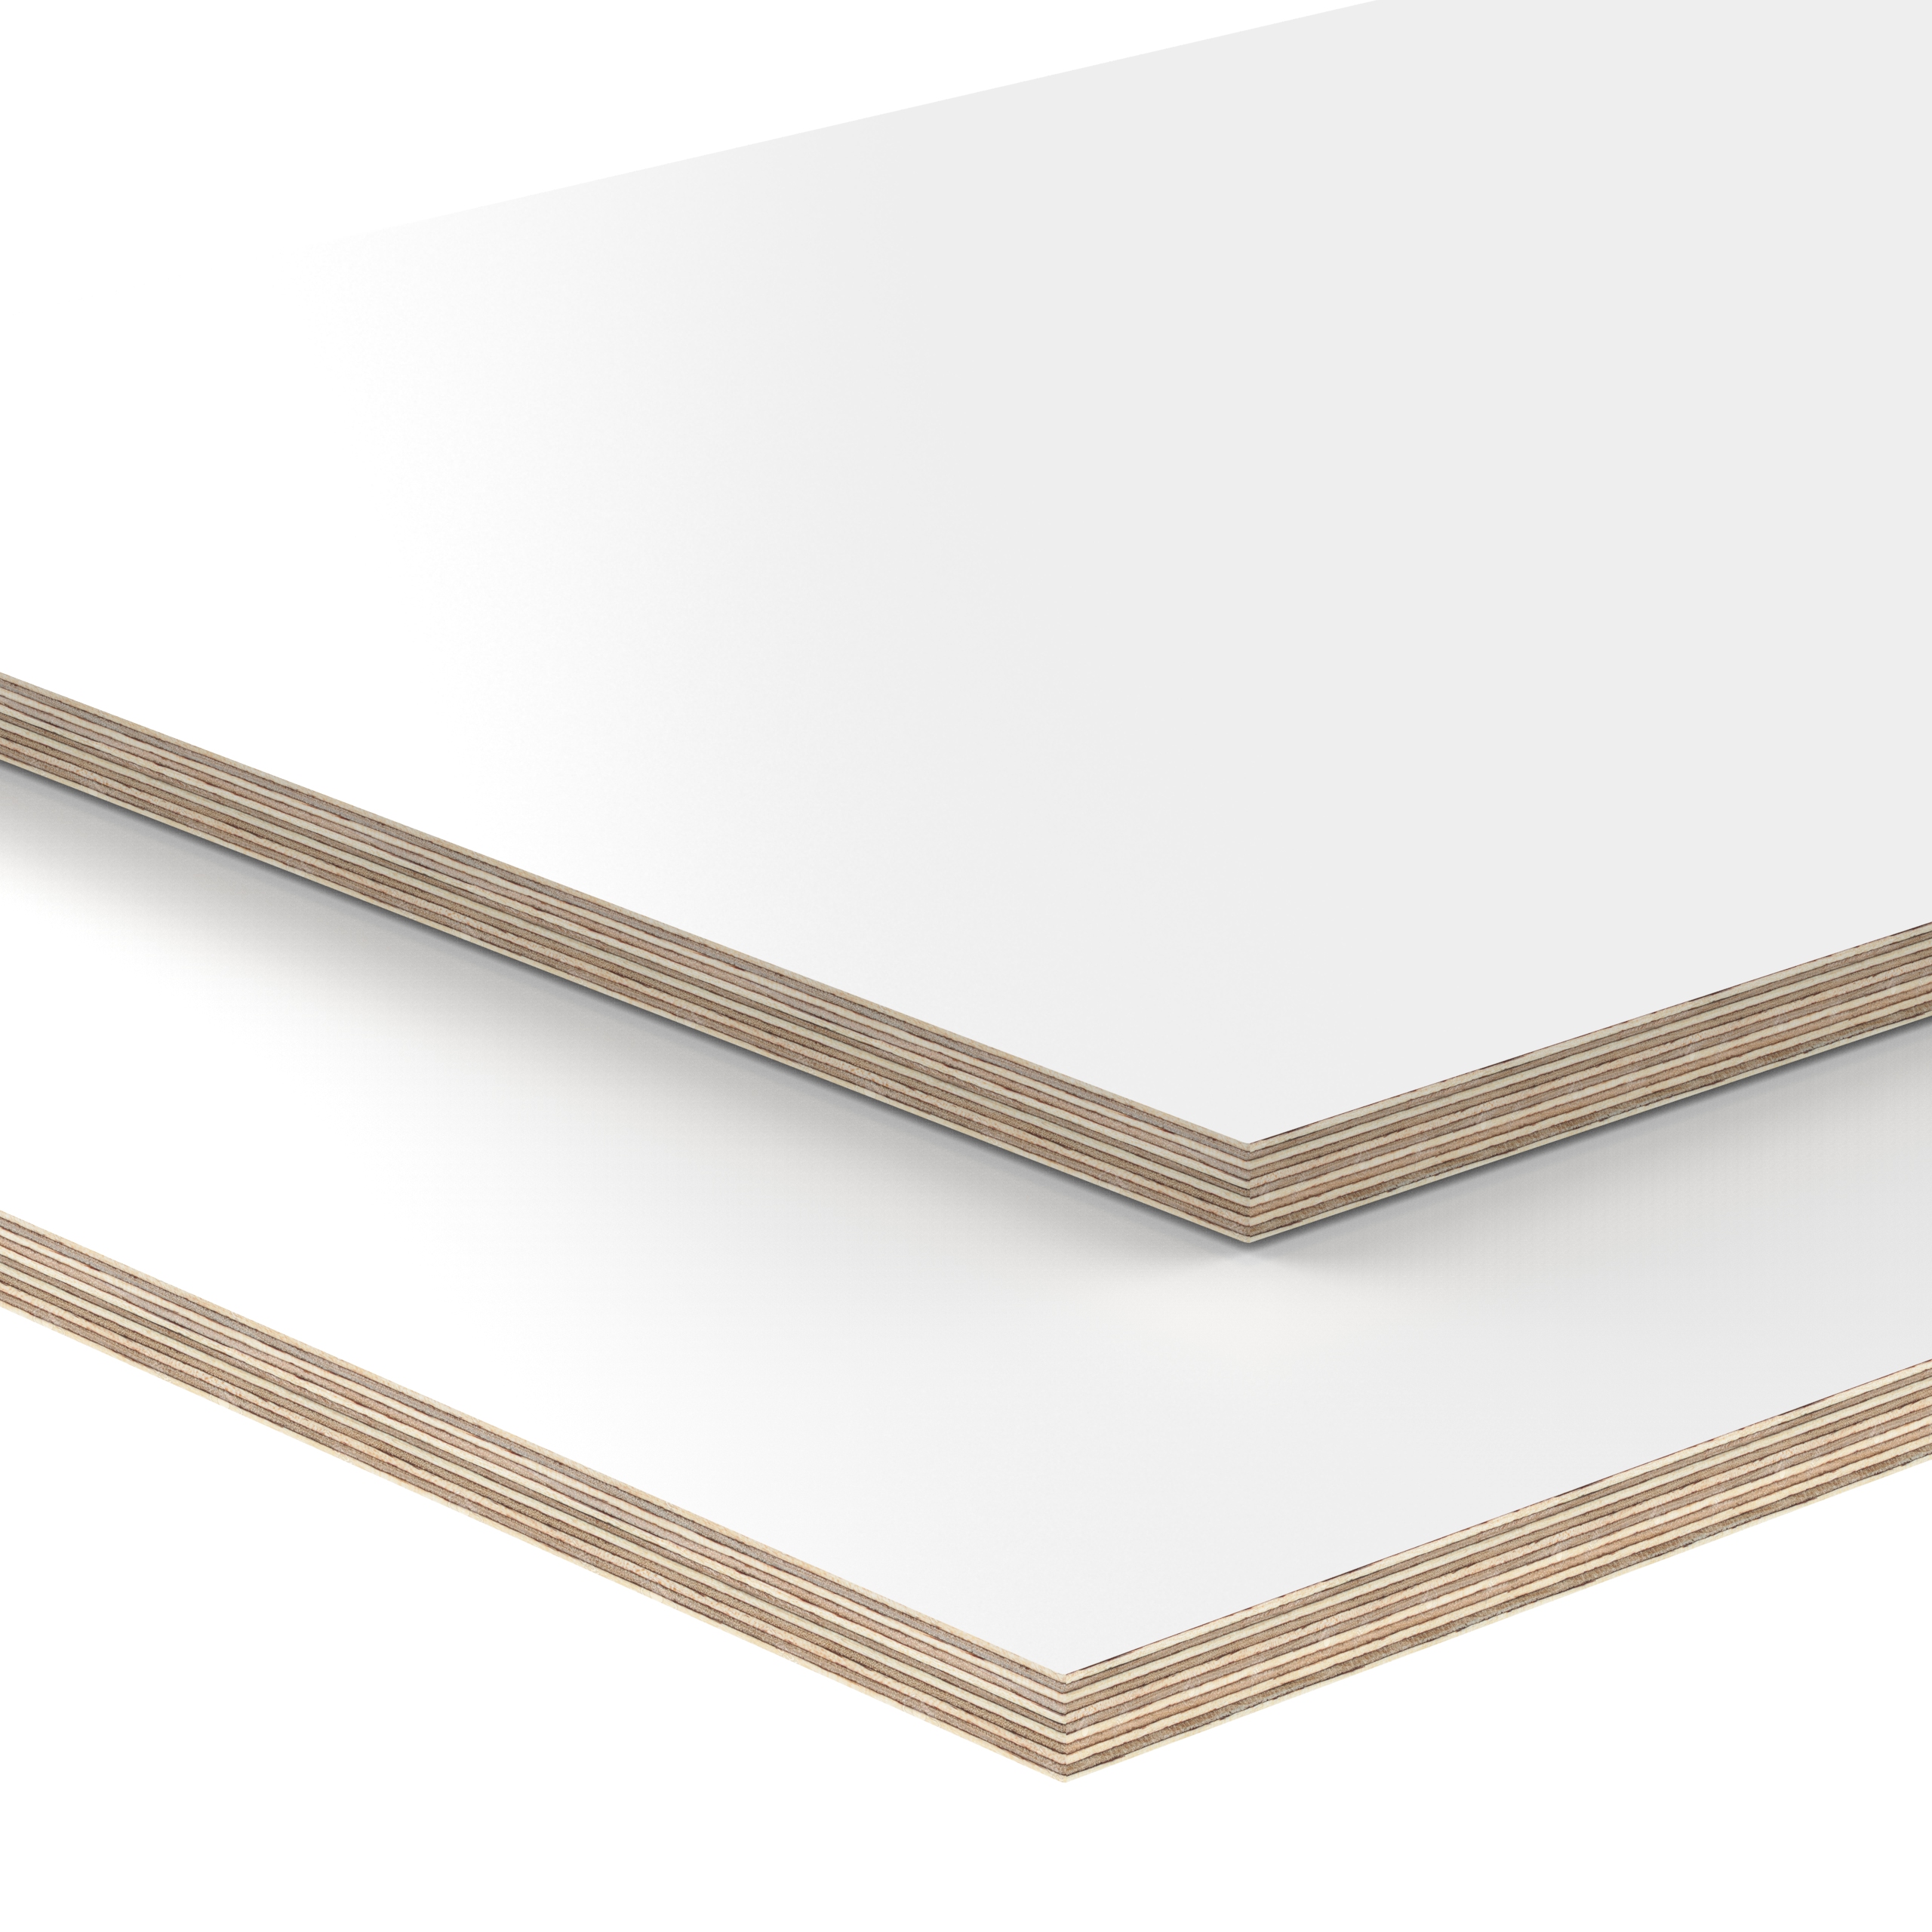 Siebdruckplatte 15mm Zuschnitt auf Maß Bretter Regalboden Birke Multiplex Holz 